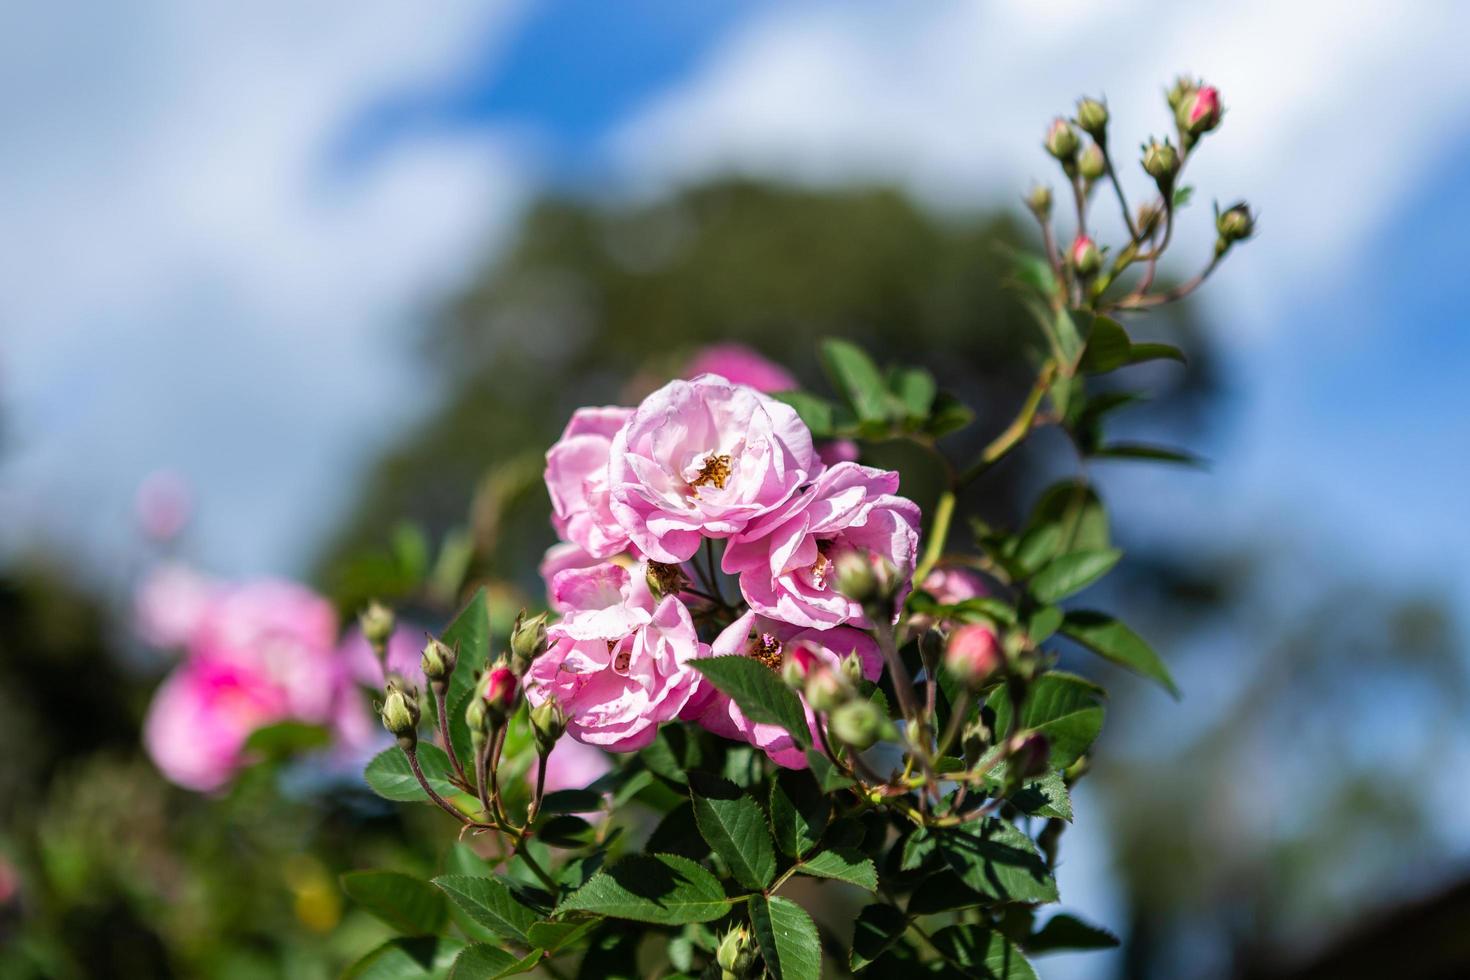 schöne rosa Rose im Rosengarten im Sommer in einem Garten. foto